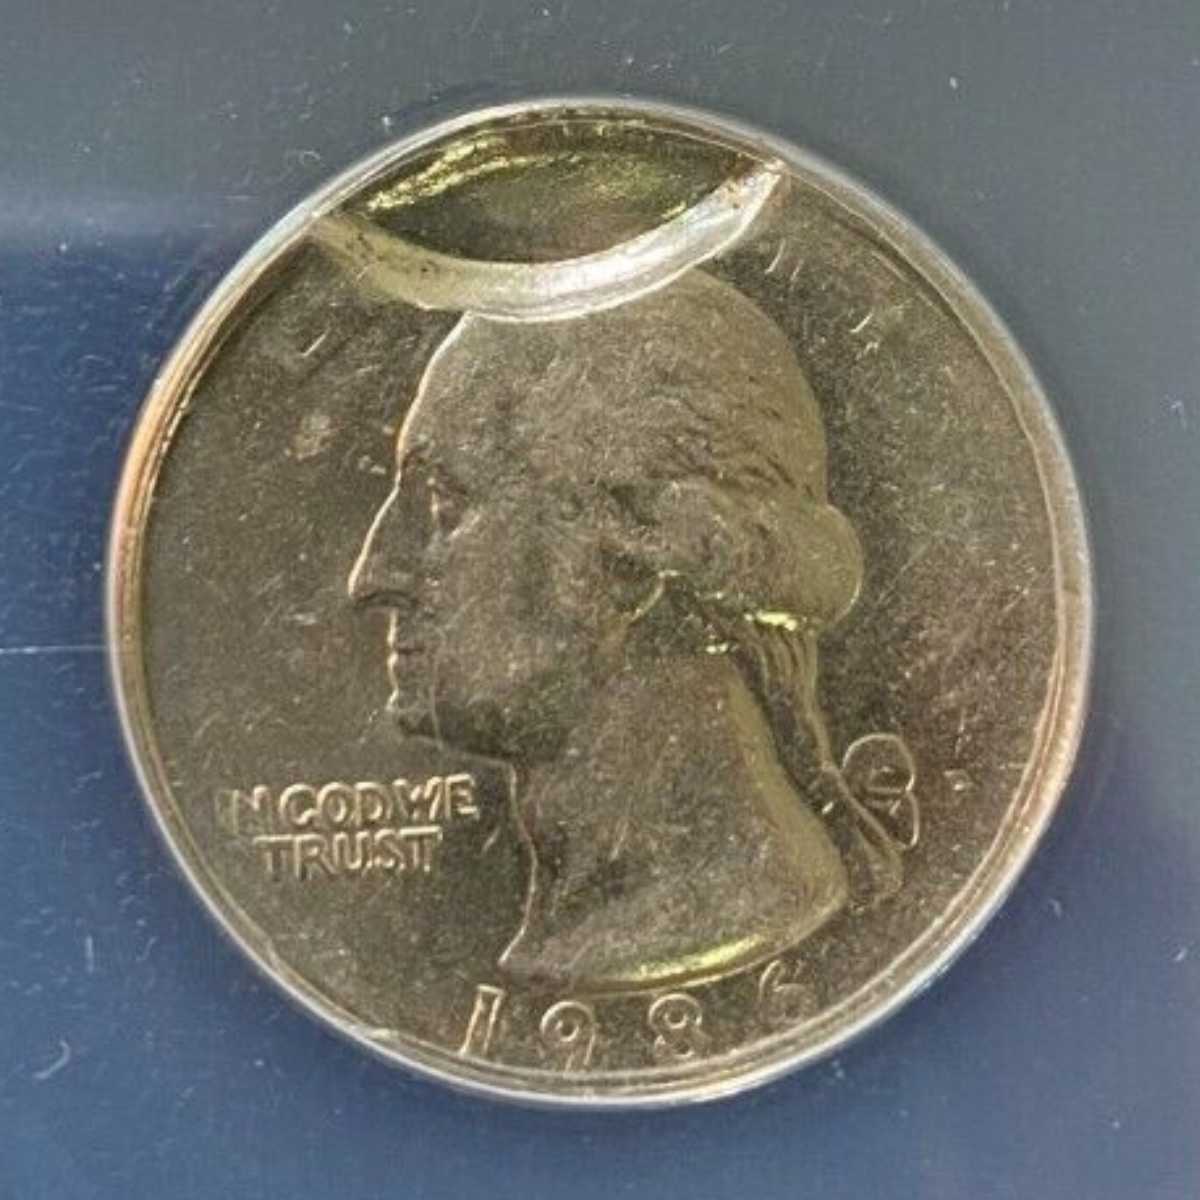 1986 P Quarter with Indent Mint Error